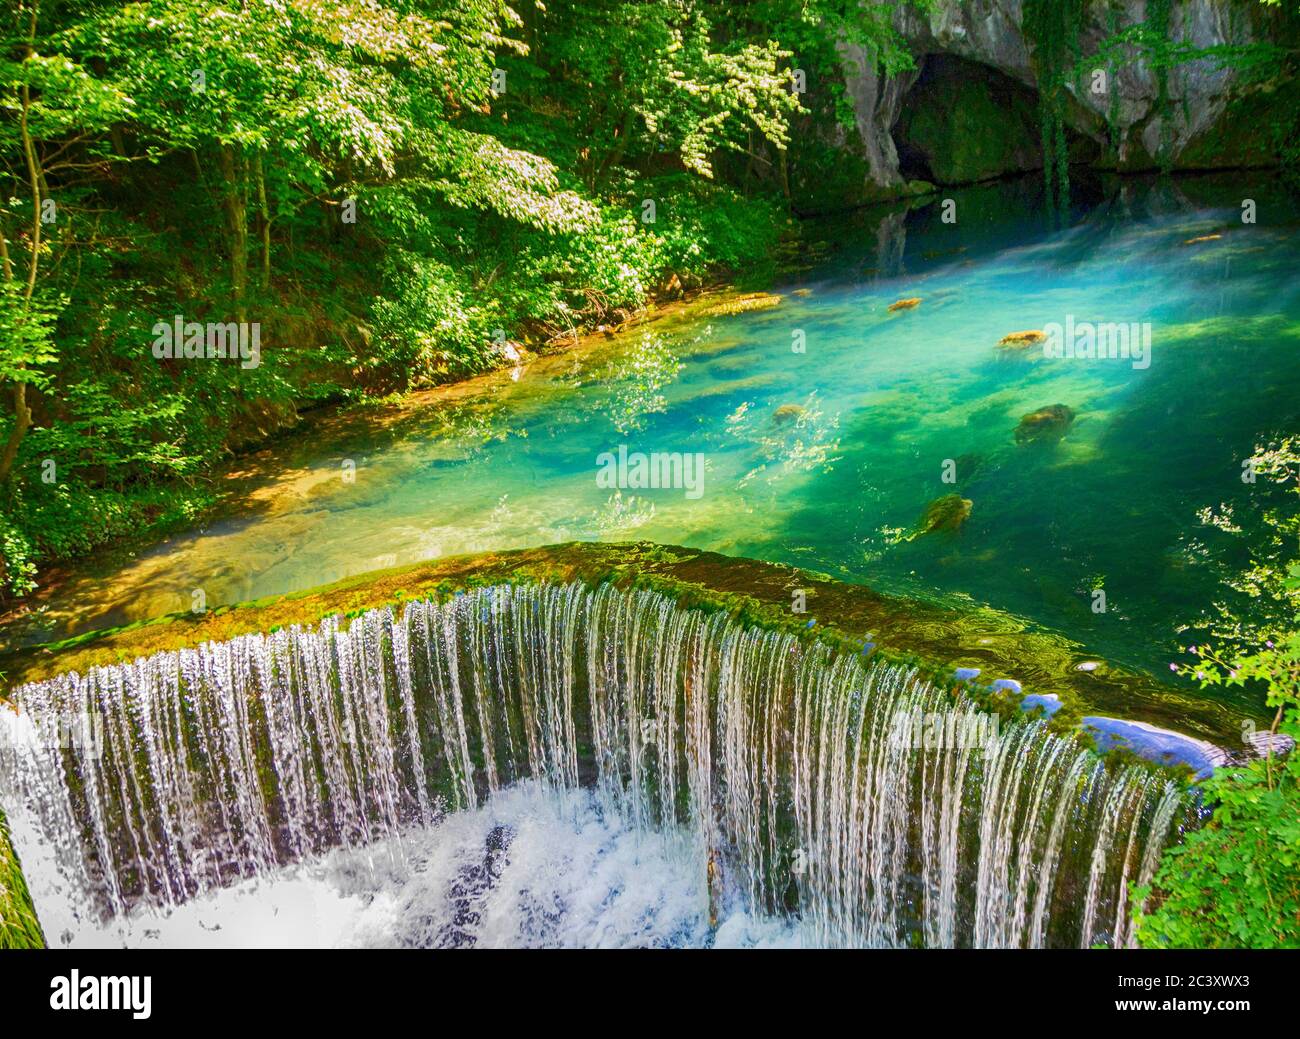 La fuente del río Krupaja en Serbia, que brota en una cueva - imagen Foto de stock